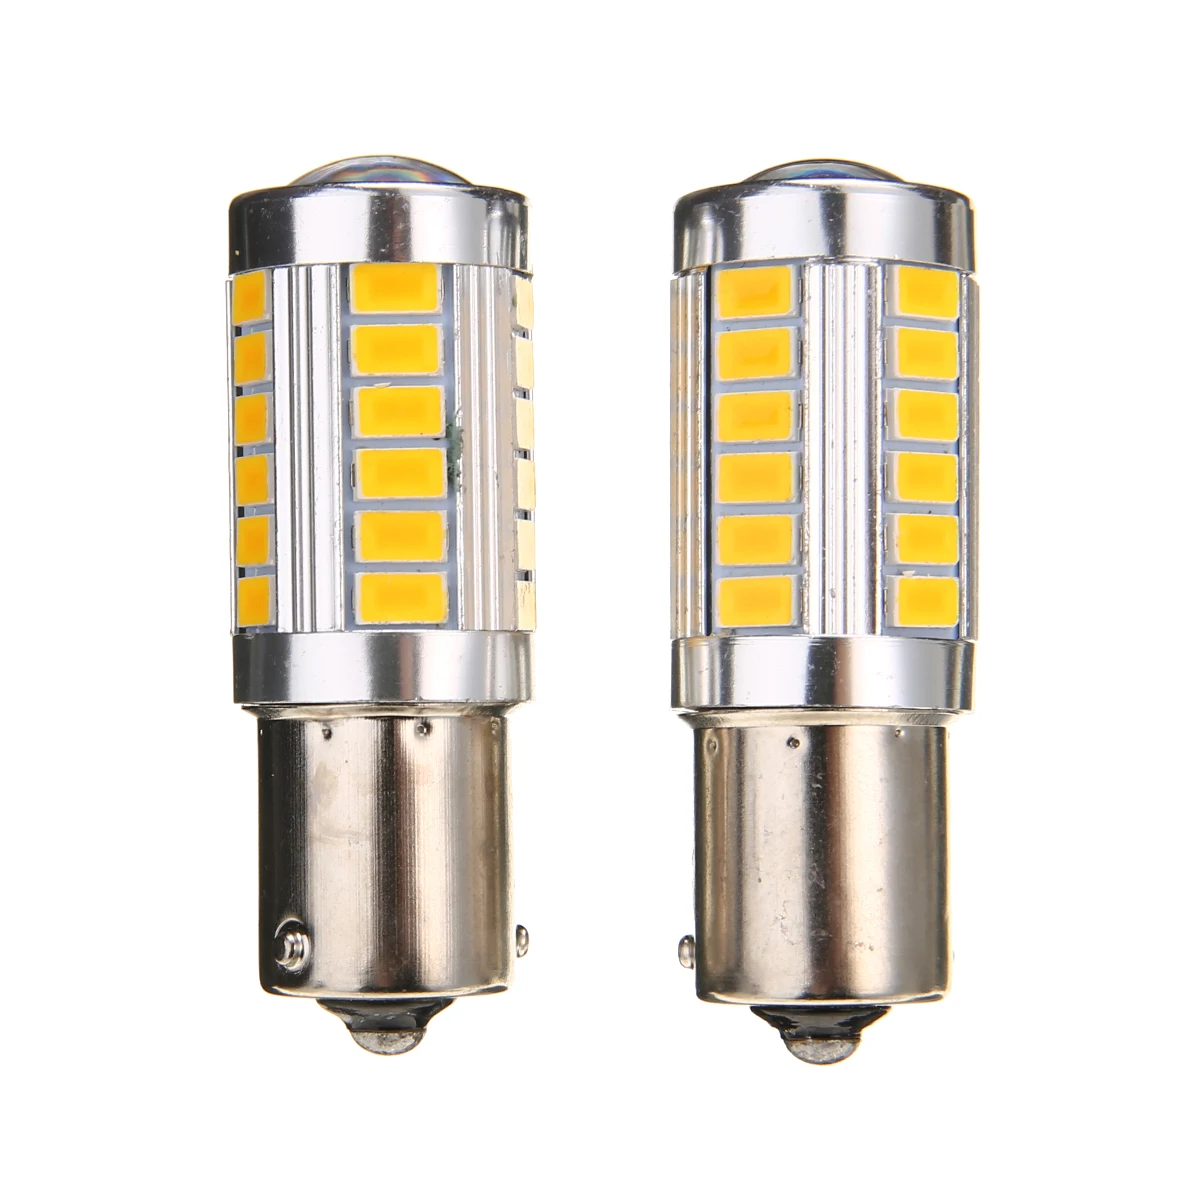 

Универсальные автомобисветодиодный светодиодные сигнальные лампы BAU15S, 4 шт., 12 В, суперъяркие боковые габаритные огни автомобиля, практичные аксессуары для задних фонарей